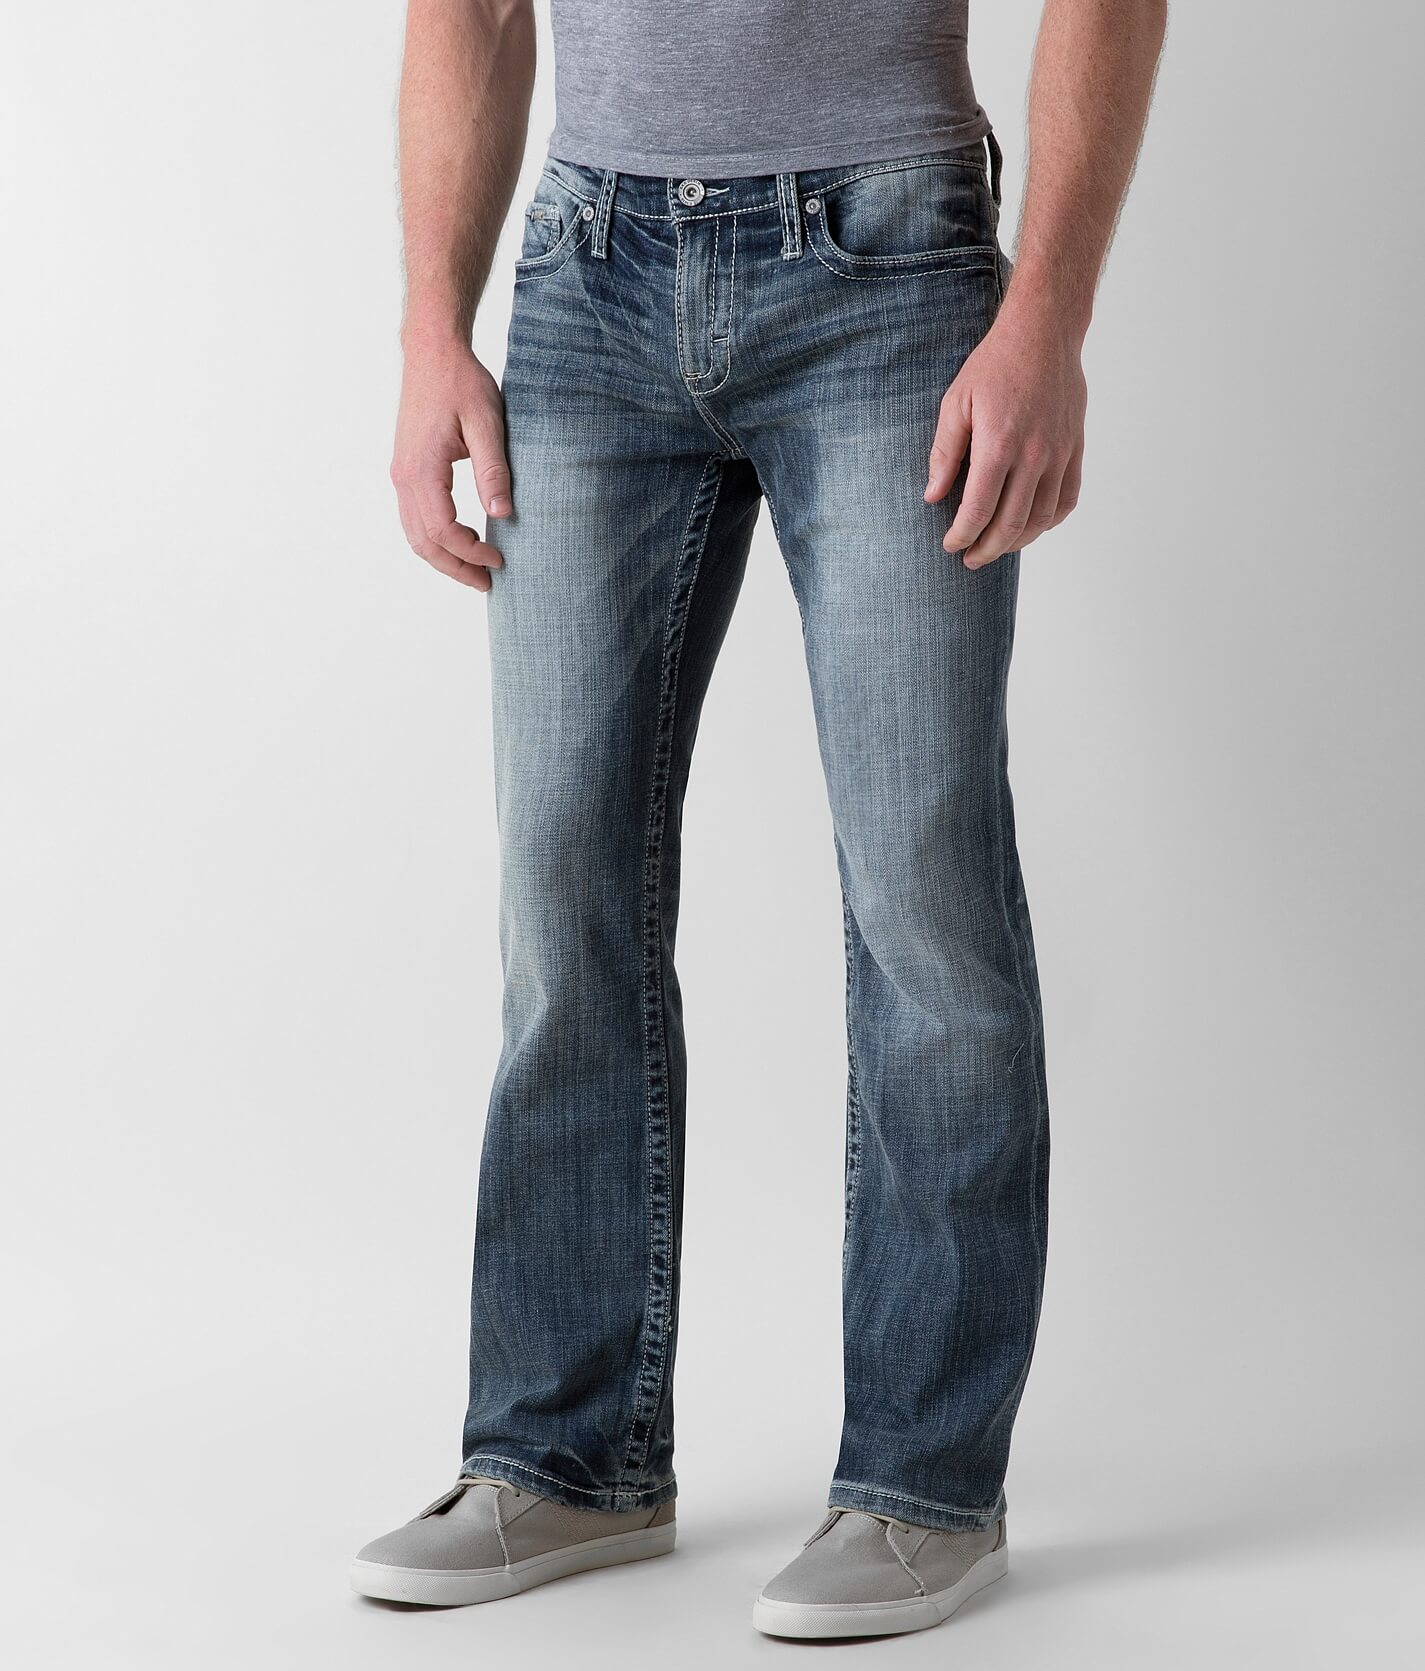 dark denim high waisted skinny jeans